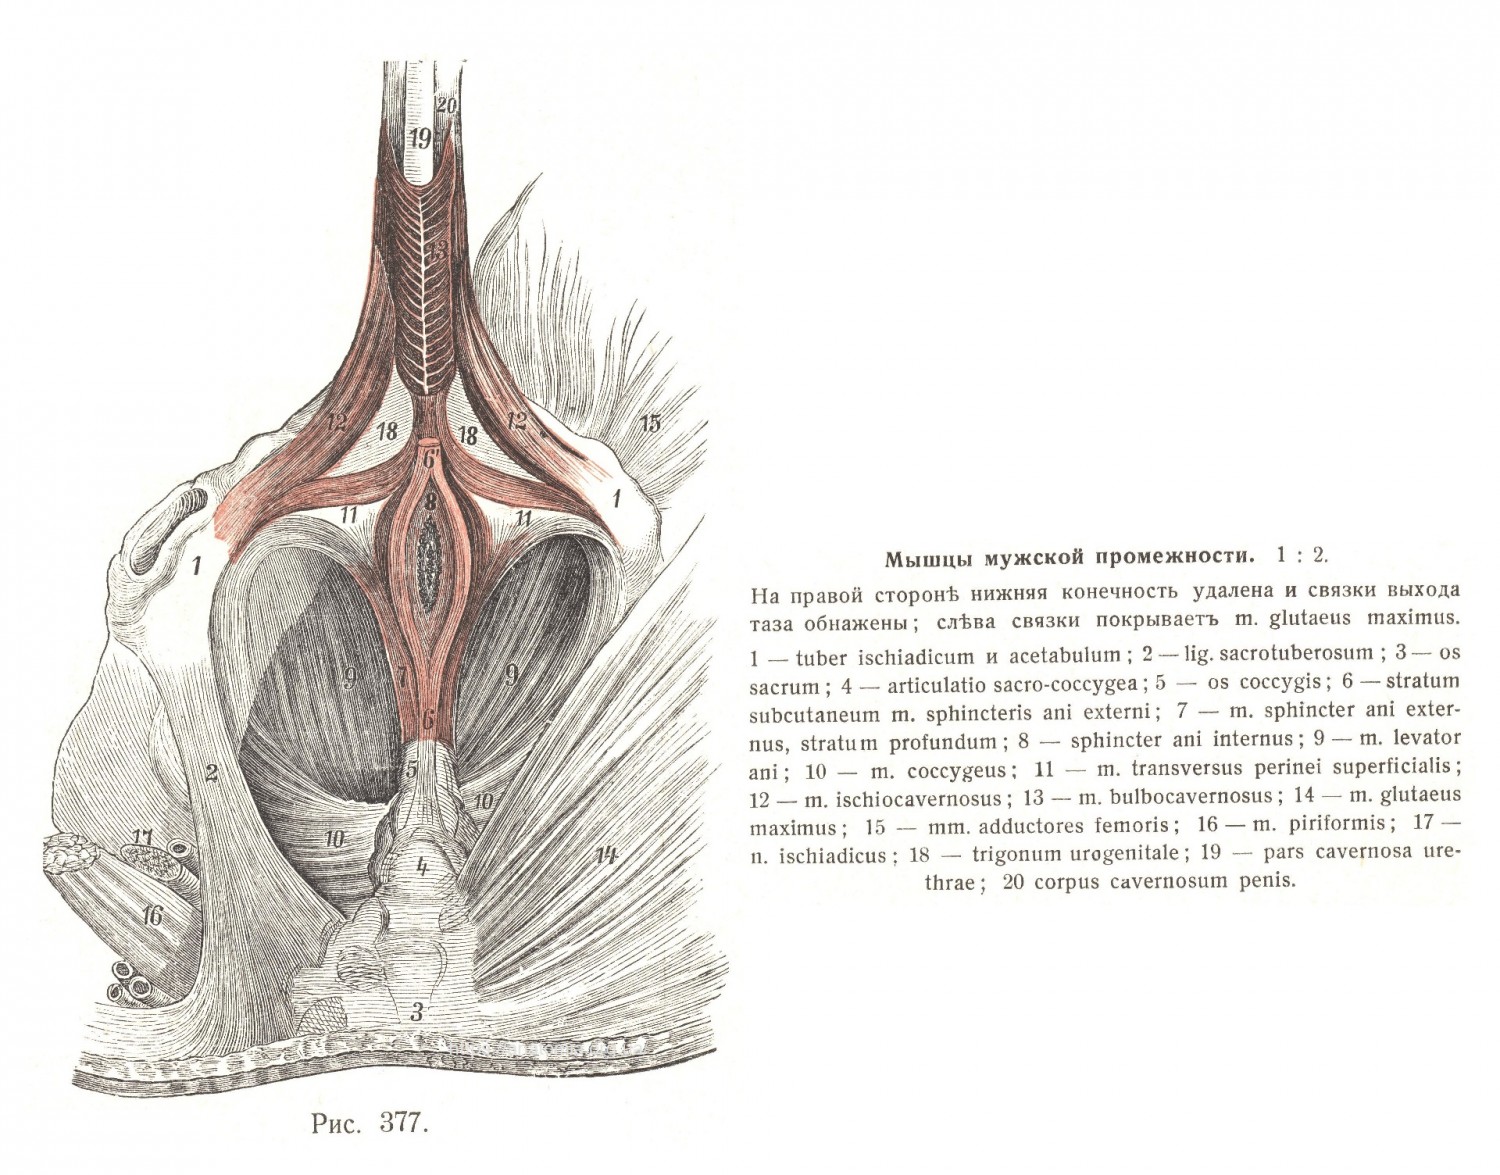 Промежность, perineum, и мышцы выхода таза, musculi exitus pelvis